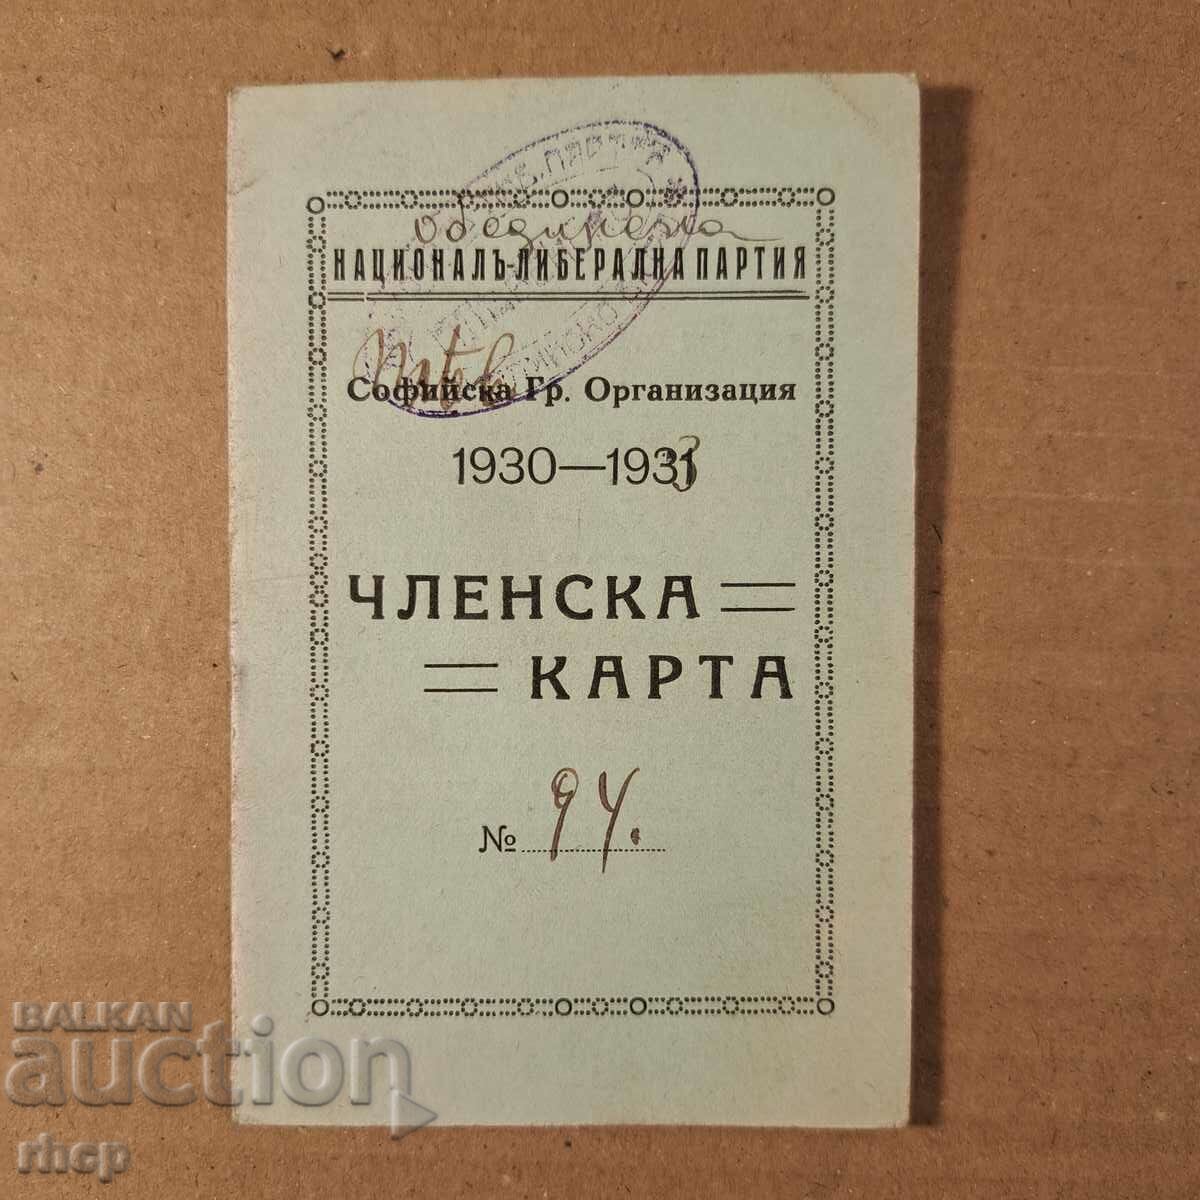 Κάρτα μέλους του Ενωτικού Εθνικού Φιλελεύθερου 1933 με σφραγίδα